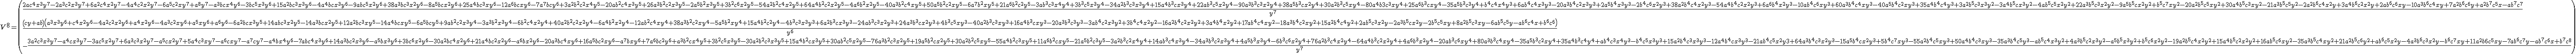 V^8=\begin{pmatrix}{{{2ac^4x^3y^7-2a^3c^2x^3y^7+6a^2c^4x^2y^7-4a^4c^2x^2y^7-6a^5c^2xy^7+a^8y^7-a^3bcx^4y^6-3bc^5x^3y^6+15a^2bc^3x^3y^6-4a^4bcx^3y^6-9abc^5x^2y^6+38a^3bc^3x^2y^6-8a^5bcx^2y^6+25a^4bc^3xy^6-12a^6bcxy^6-7a^7bcy^6+3a^2b^2c^2x^4y^5-20ab^2c^4x^3y^5+26a^3b^2c^2x^3y^5-2a^5b^2x^3y^5+3b^2c^6x^2y^5-54a^2b^2c^4x^2y^5+64a^4b^2c^2x^2y^5-4a^6b^2x^2y^5-40a^3b^2c^4xy^5+50a^5b^2c^2xy^5-6a^7b^2xy^5+21a^6b^2c^2y^5-3ab^3c^3x^4y^4+3b^3c^5x^3y^4-34a^2b^3c^3x^3y^4+15a^4b^3cx^3y^4+22ab^3c^5x^2y^4-90a^3b^3c^3x^2y^4+38a^5b^3cx^2y^4+30a^2b^3c^5xy^4-80a^4b3c^3xy^4+25a^6b^3cxy^4-35a^5b^3c^3y^4+b^4c^4x^4y^3+6ab^4c^4x^3y^3-20a^3b^4c^2x^3y^3+2a^5b^4x^3y^3-2b^4c^6x^2y^3+38a^2b^4c^4x^2y^3-54a^4b^4c^2x^2y^3+6a^6b^4x^2y^3-10ab^4c^6xy^3+60a^3b^4c^4xy^3-40a^5b^4c^2xy^3+35a^4b^4c^4y^3+3a^2b^5c^3x^3y^2-3a^4b^5cx^3y^2-4ab^5c^5x^2y^2+22a^3b^5c^3x^2y^2-9a^5b^5cx^2y^2+b^5c^7xy^2-20a^2b^5c^5xy^2+30a^4b^5c^3xy^2-21a^3b^5c^5y^2-2a^2b^6c^4x^2y+3a^4b^6c^2x^2y+2ab^6c^6xy-10a^3b^6c^4xy+7a^2b^6c^6y+a^2b^7c^5x-ab^7c^7}\over{y^7}}\cr {{\left(cy+ab \right)\left(a^3x^3y^6+c^4x^2y^6-4a^2c^2x^2y^6+a^4x^2y^6-4a^3c^2xy^6+a^5xy^6+a^6y^6-6a^2bcx^3y^5+14abc^3x^2y^5-14a^3bcx^2y^5+12a^2bc^3xy^5-14a^4bcxy^5-6a^5bcy^5+9ab^2c^2x^3y^4-3a^3b^2x^3y^4-6b^2c^4x^2y^4+40a^2b^2c^2x^2y^4-6a^4b^2x^2y^4-12ab^2c^4xy^4+38a^3b^2c^2xy^4-5a^5b^2xy^4+15a^4b^2c^2y^4-4b^3c^3x^3y^3+6a^2b^3cx^3y^3-24ab^3c^3x^2y^3+24a^3b^3cx^2y^3+4b^3c^5xy^3-40a^2b^3c^3xy^3+16a^4b^3cxy^3-20a^3b^3c^3y^3-3ab^4c^2x^3y^2+3b^4c^4x^2y^2-16a^2b^4c^2x^2y^2+3a^4b^4x^2y^2+17ab^4c^4xy^2-18a^3b^4c^2xy^2+15a^2b^4c^4y^2+2ab^5c^3x^2y-2a^3b^5cx^2y-2b^5c^5xy+8a^2b^5c^3xy-6ab^5c^5y-ab^6c^4x+b^6c^6\right)}\over{y^6}}\cr -{{3a^2c^3x^3y^7-a^4cx^3y^7-3ac^5x^2y^7+6a^3c^3x^2y^7-a^5cx^2y^7+5a^4c^3xy^7-a^6cxy^7-a^7cy^7-a^4bx^4y^6-7abc^4x^3y^6+14a^3bc^2x^3y^6-a^5bx^3y^6+3bc^6x^2y^6-30a^2bc^4x^2y^6+21a^4bc^2x^2y^6-a^6bx^2y^6-20a^3bc^4xy^6+16a^5bc^2xy^6-a^7bxy^6+7a^6bc^2y^6+a^3b^2cx^4y^5+3b^2c^5x^3y^5-30a^2b^2c^3x^3y^5+15a^4b^2cx^3y^5+30ab^2c^5x^2y^5-76a^3b^2c^3x^2y^5+19a^5b^2cx^2y^5+30a^2b^2c^5xy^5-55a^4b^2c^3xy^5+11a^6b^2cxy^5-21a^5b^2c^3y^5-3a^2b^3c^2x^4y^4+14ab^3c^4x^3y^4-34a^3b^3c^2x^3y^4+4a^5b^3x^3y^4-6b^3c^6x^2y^4+76a^2b^3c^4x^2y^4-64a^4b^3c^2x^2y^4+4a^6b^3x^2y^4-20ab^3c^6xy^4+80a^3b^3c^4xy^4-35a^5b^3c^2xy^4+35a^4b^3c^4y^4+ab^4c^3x^4y^3-b^4c^5x^3y^3+15a^2b^4c^3x^3y^3-12a^4b^4cx^3y^3-21ab^4c^5x^2y3+64a^3b^4c^3x^2y^3-15a^5b^4cx^2y^3+5b^4c^7xy^3-55a^2b^4c^5xy^3+50a^4b^4c^3xy^3-35a^3b^4c^5y^3-ab^5c^4x^3y^2+4a^3b^5c^2x^3y^2-a^5b^5x^3y^2+b^5c^6x^2y^2-19a^2b^5c^4x^2y^2+15a^4b^5c^2x^2y^2+16ab^5c^6xy^2-35a^3b^5c^4xy^2+21a^2b^5c^6y^2+ab^6c^5x^2y-4a^3b^6c^3x^2y-b^6c^7xy+11a^2b6c^5xy-7ab^6c^7y-ab^7c^6x+b^7c^8 }\over{y^7}}\cr }\end{pmatrix}